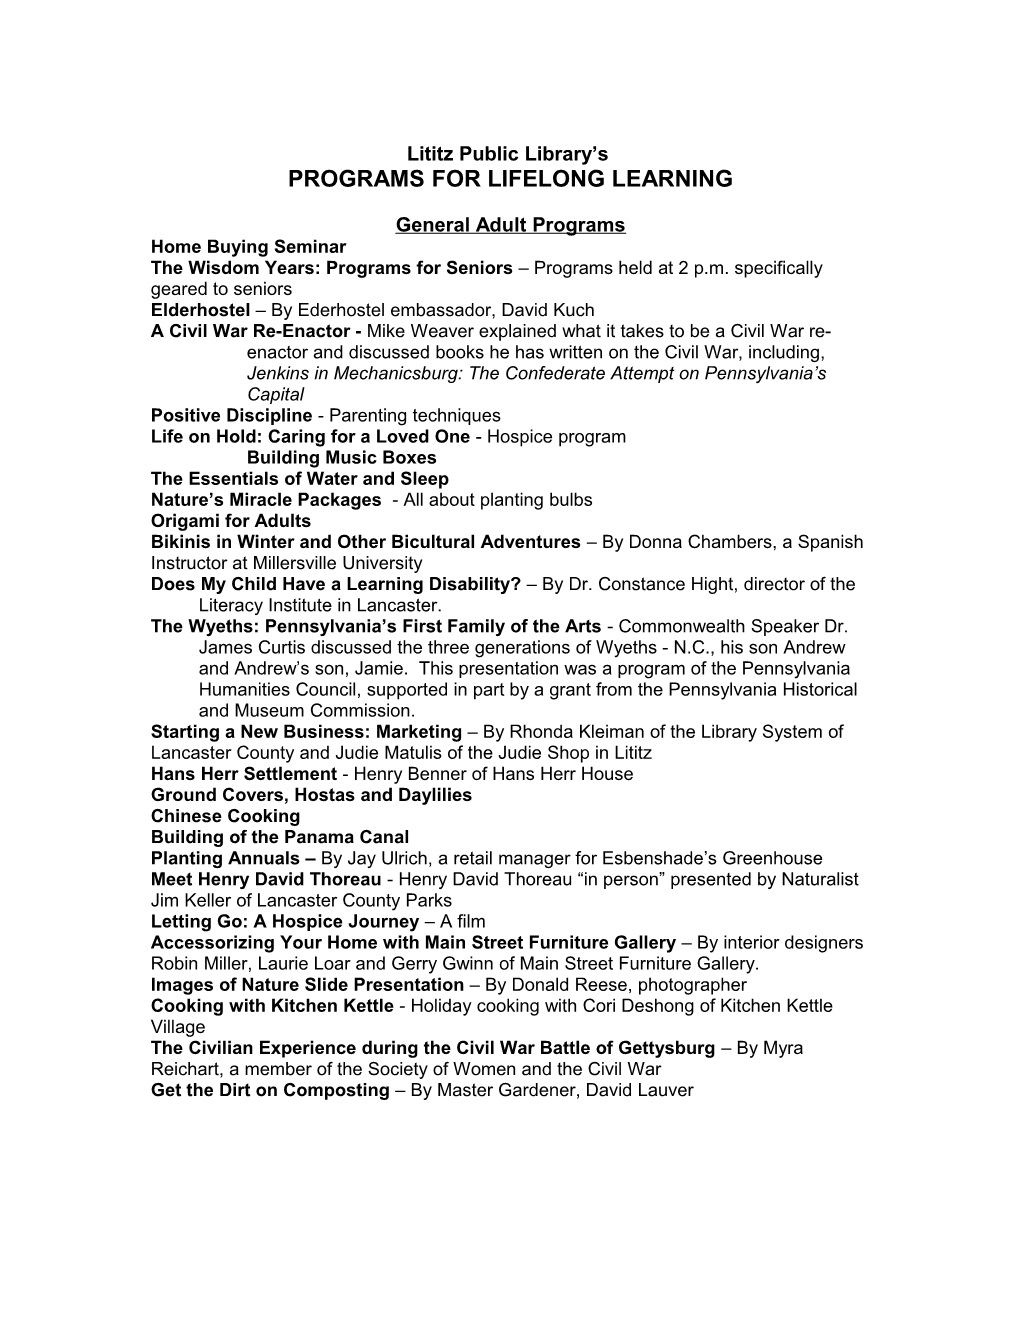 Programs for Lifelong Learning